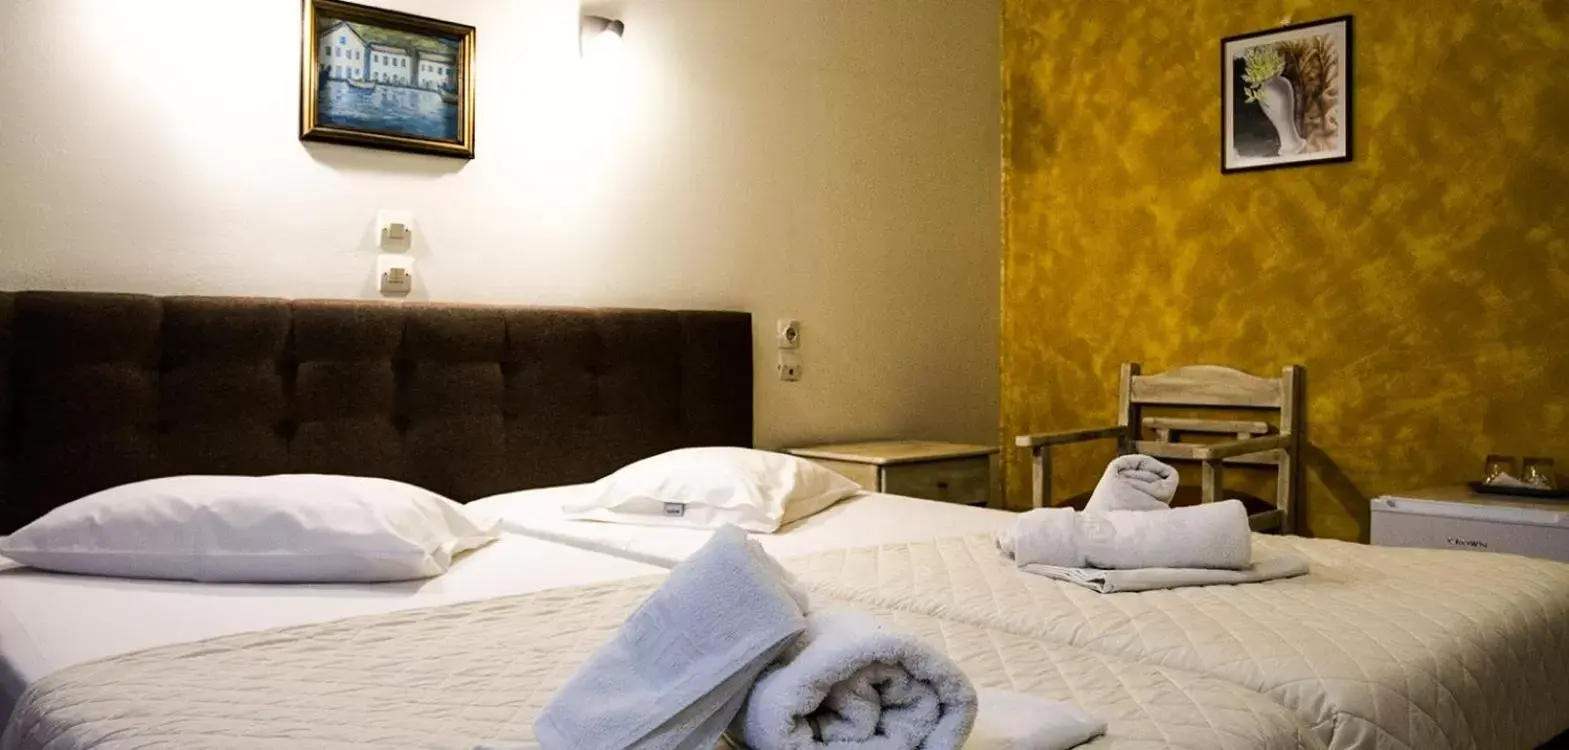 Bed in Hotel Alos